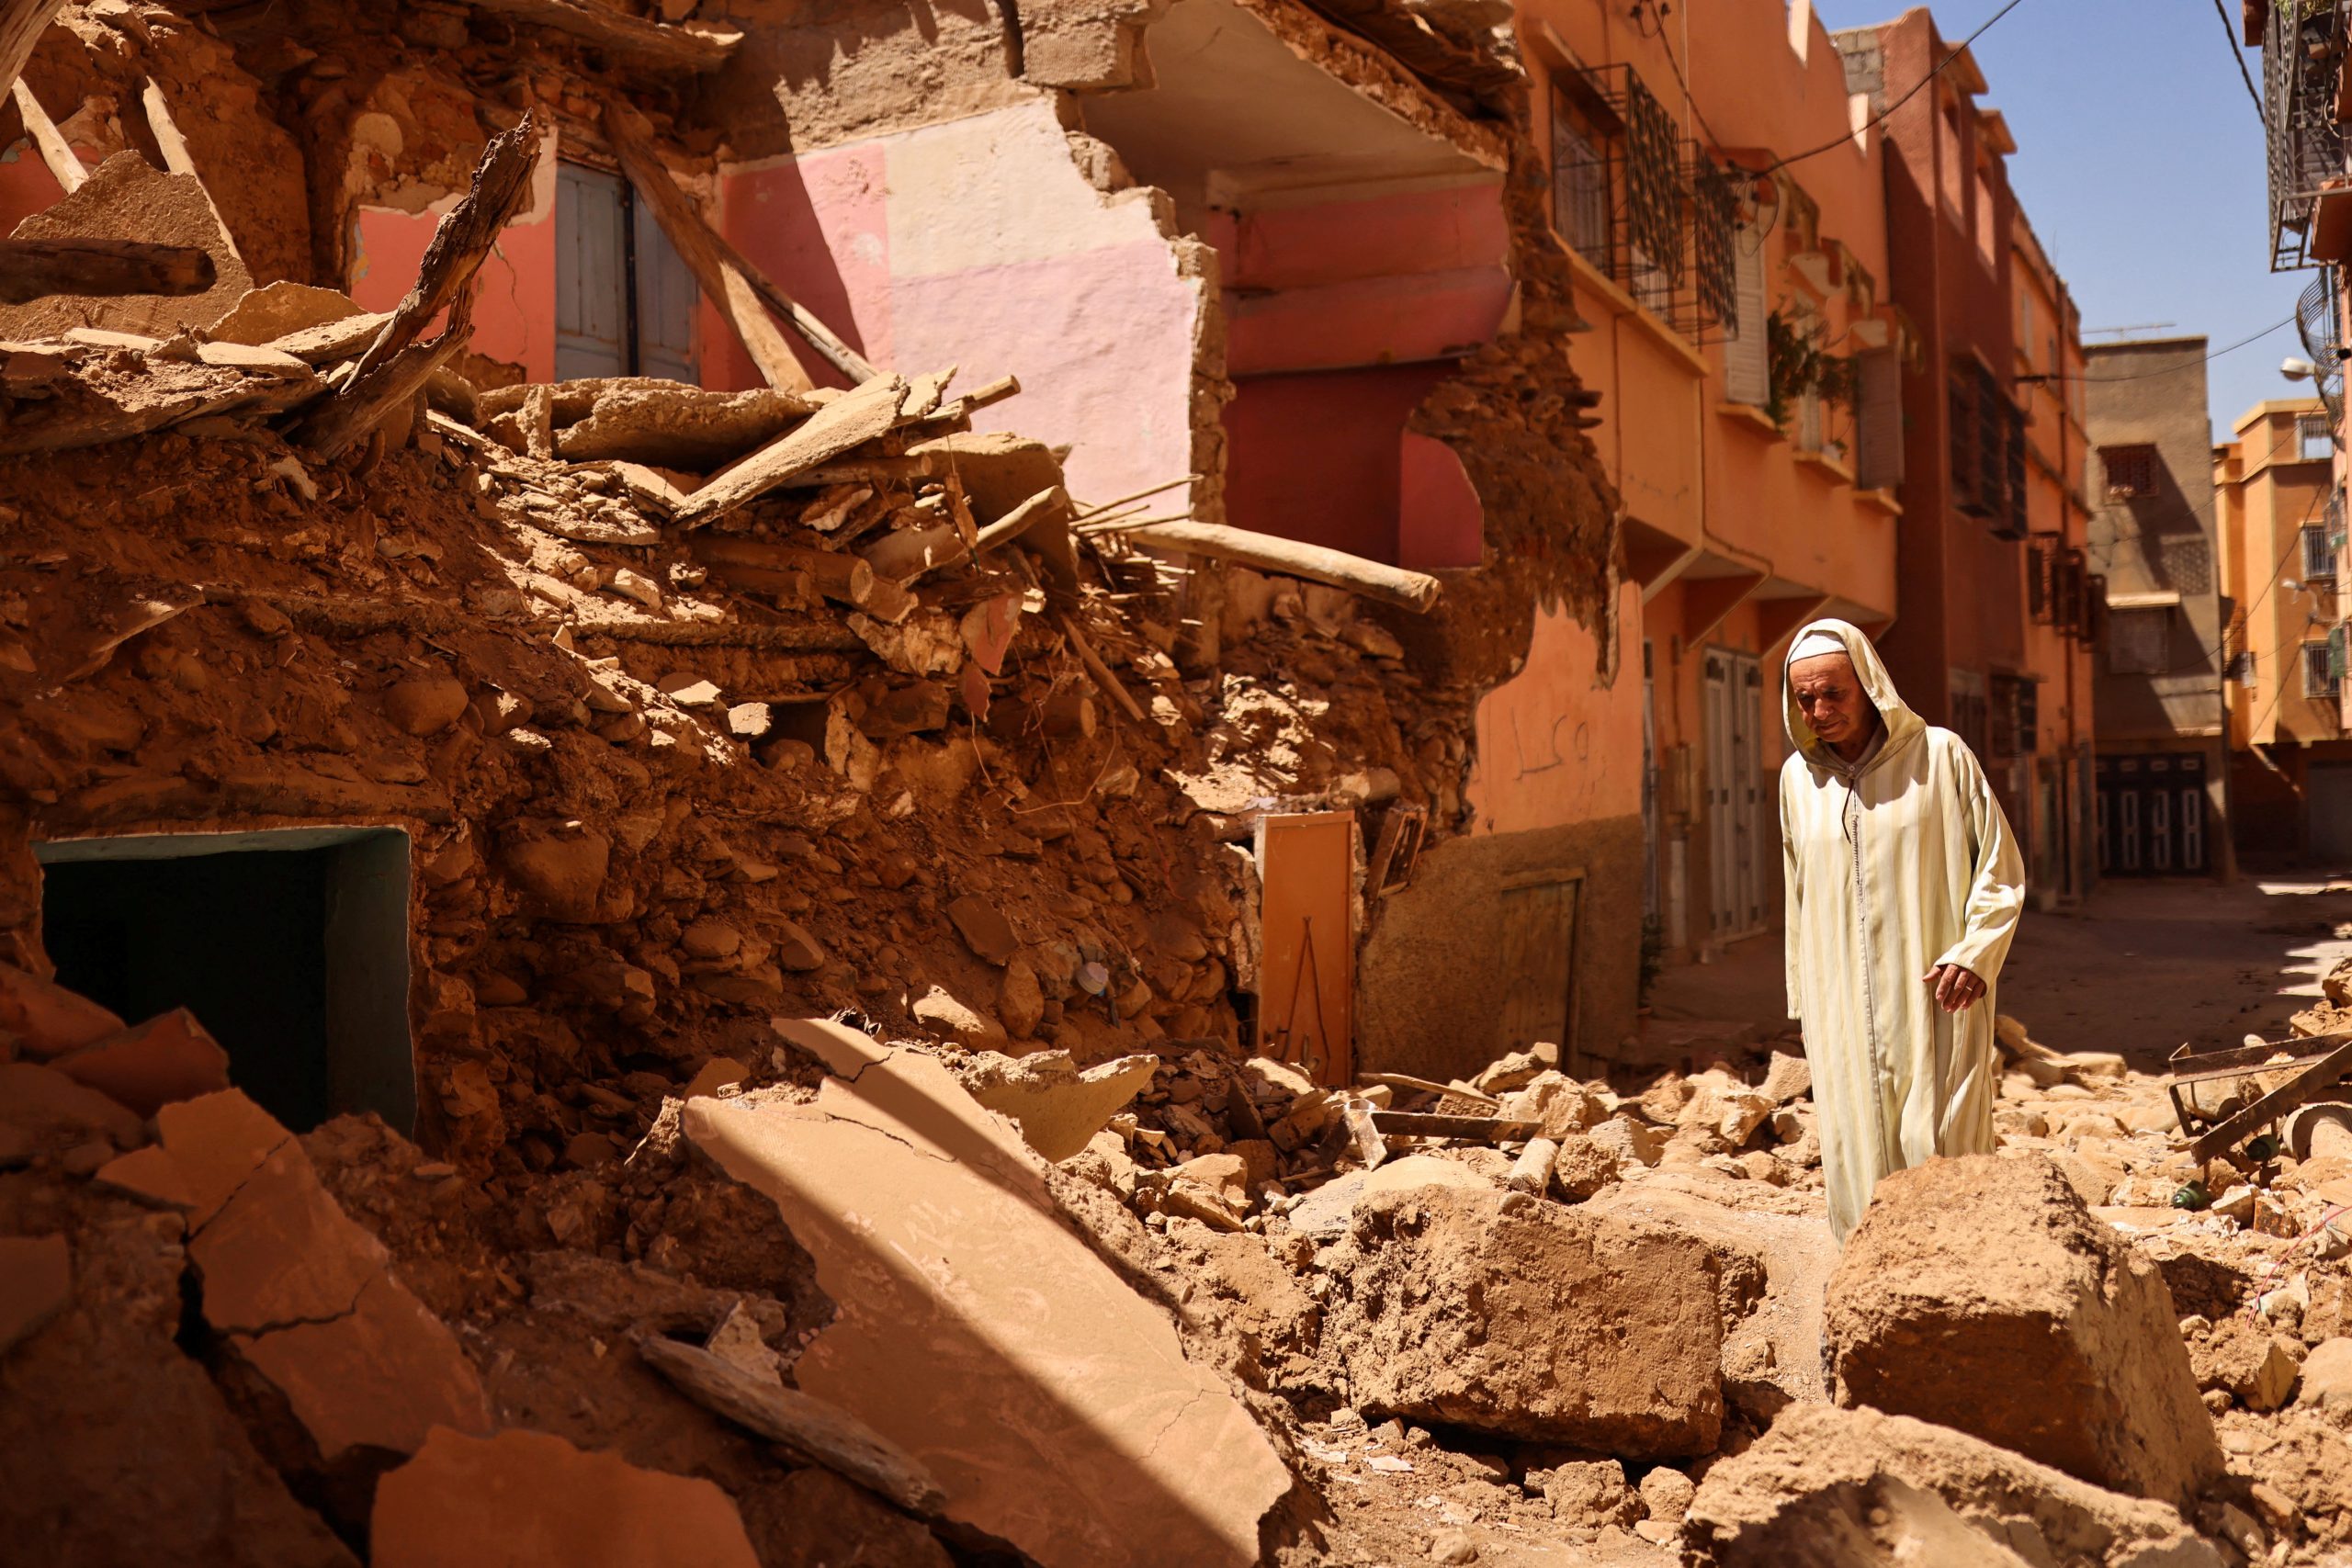 Tiltify - Morocco Earthquake Response